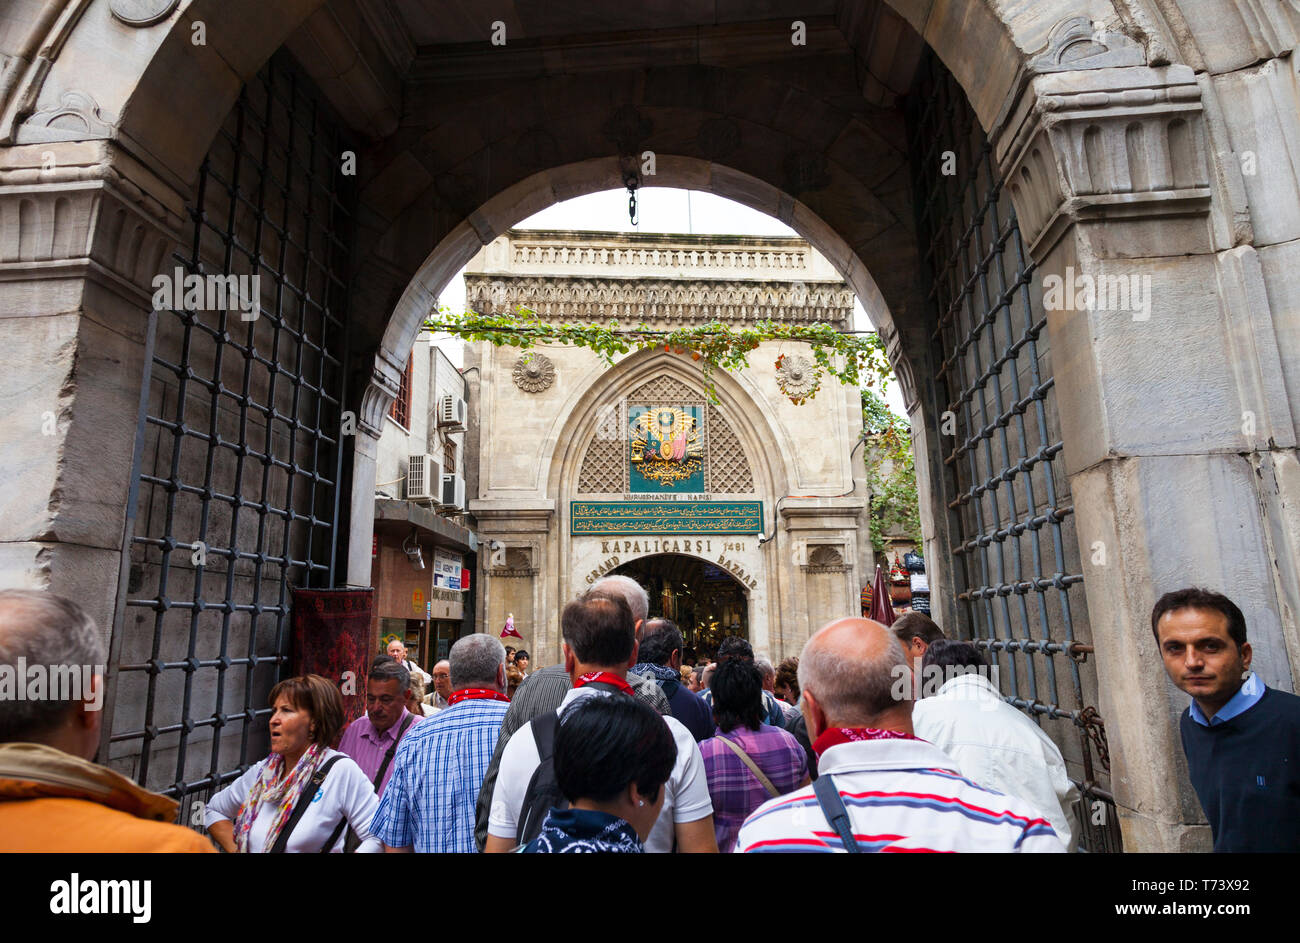 Puerta de entrada Nuruosmaniye. Gran Bazar, Estambul, Turquía, Stock Photo